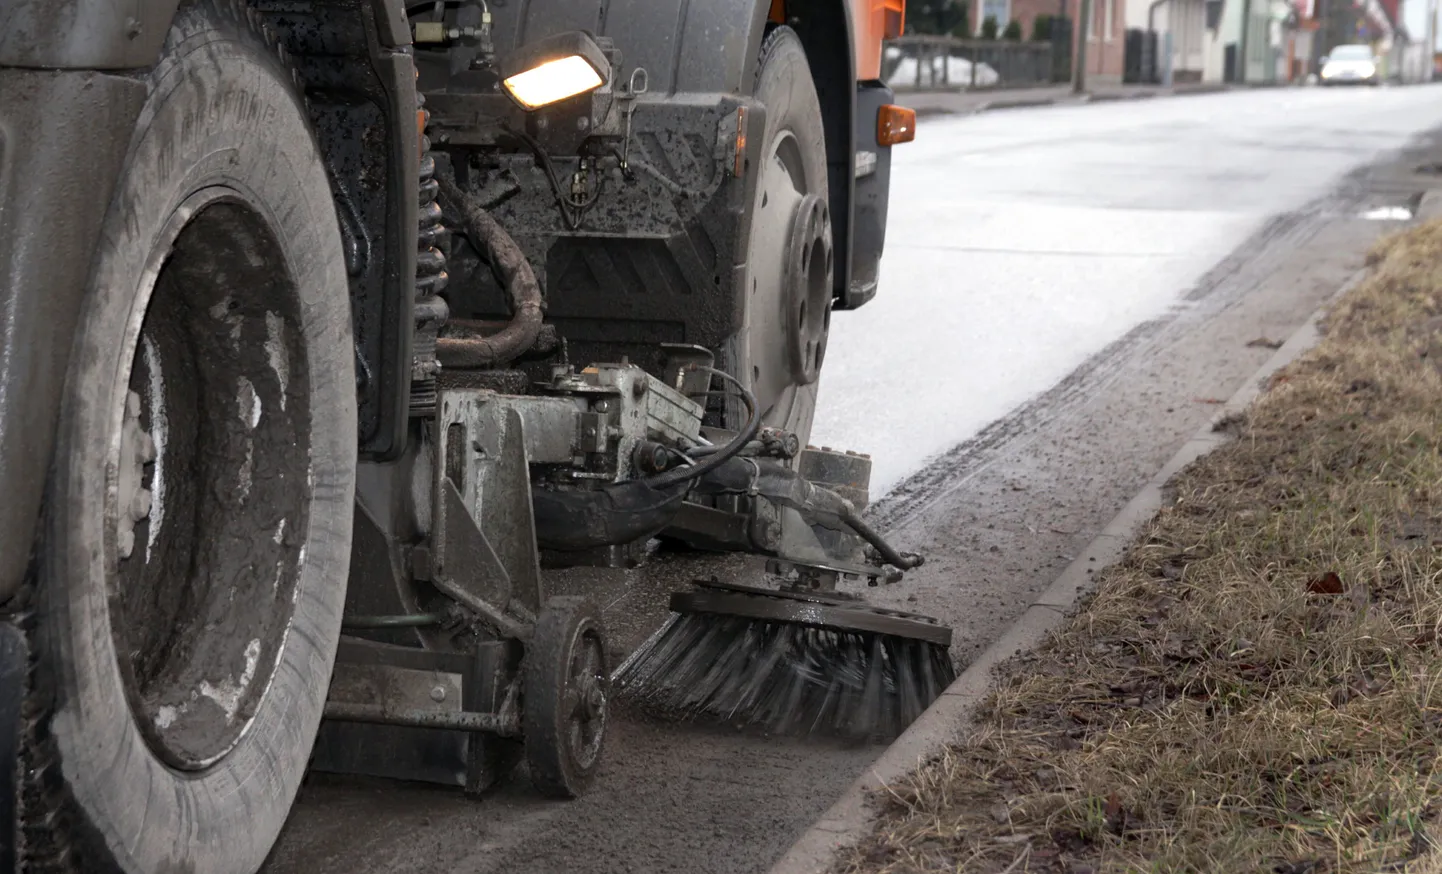 Mullu Rapla Teede Tšehhist soetatud harjaauto peab üksi Pärnu tähtsamad tänavad ja kesklinna talvetolmust puhastama. Õnneks on tegu ühe võimsama masinaga omasuguste seas.